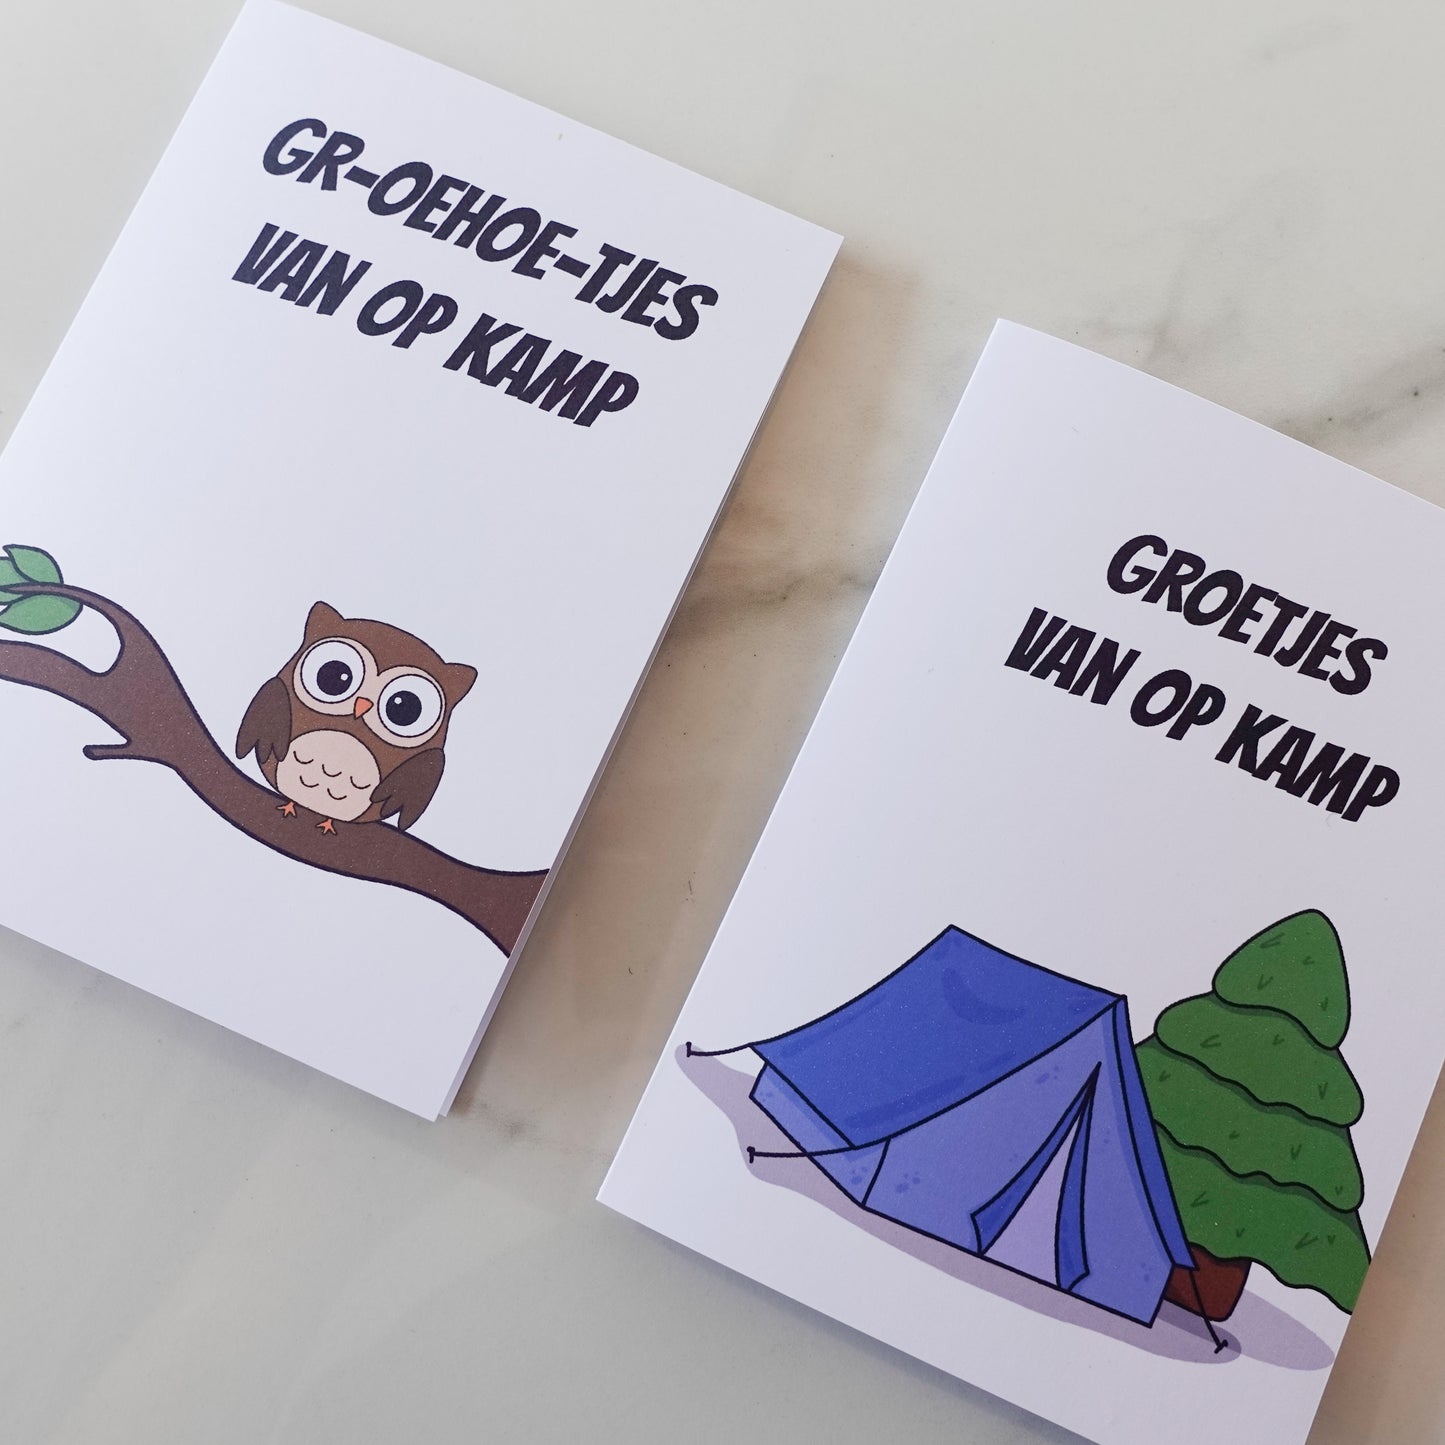 Kampkaart tent